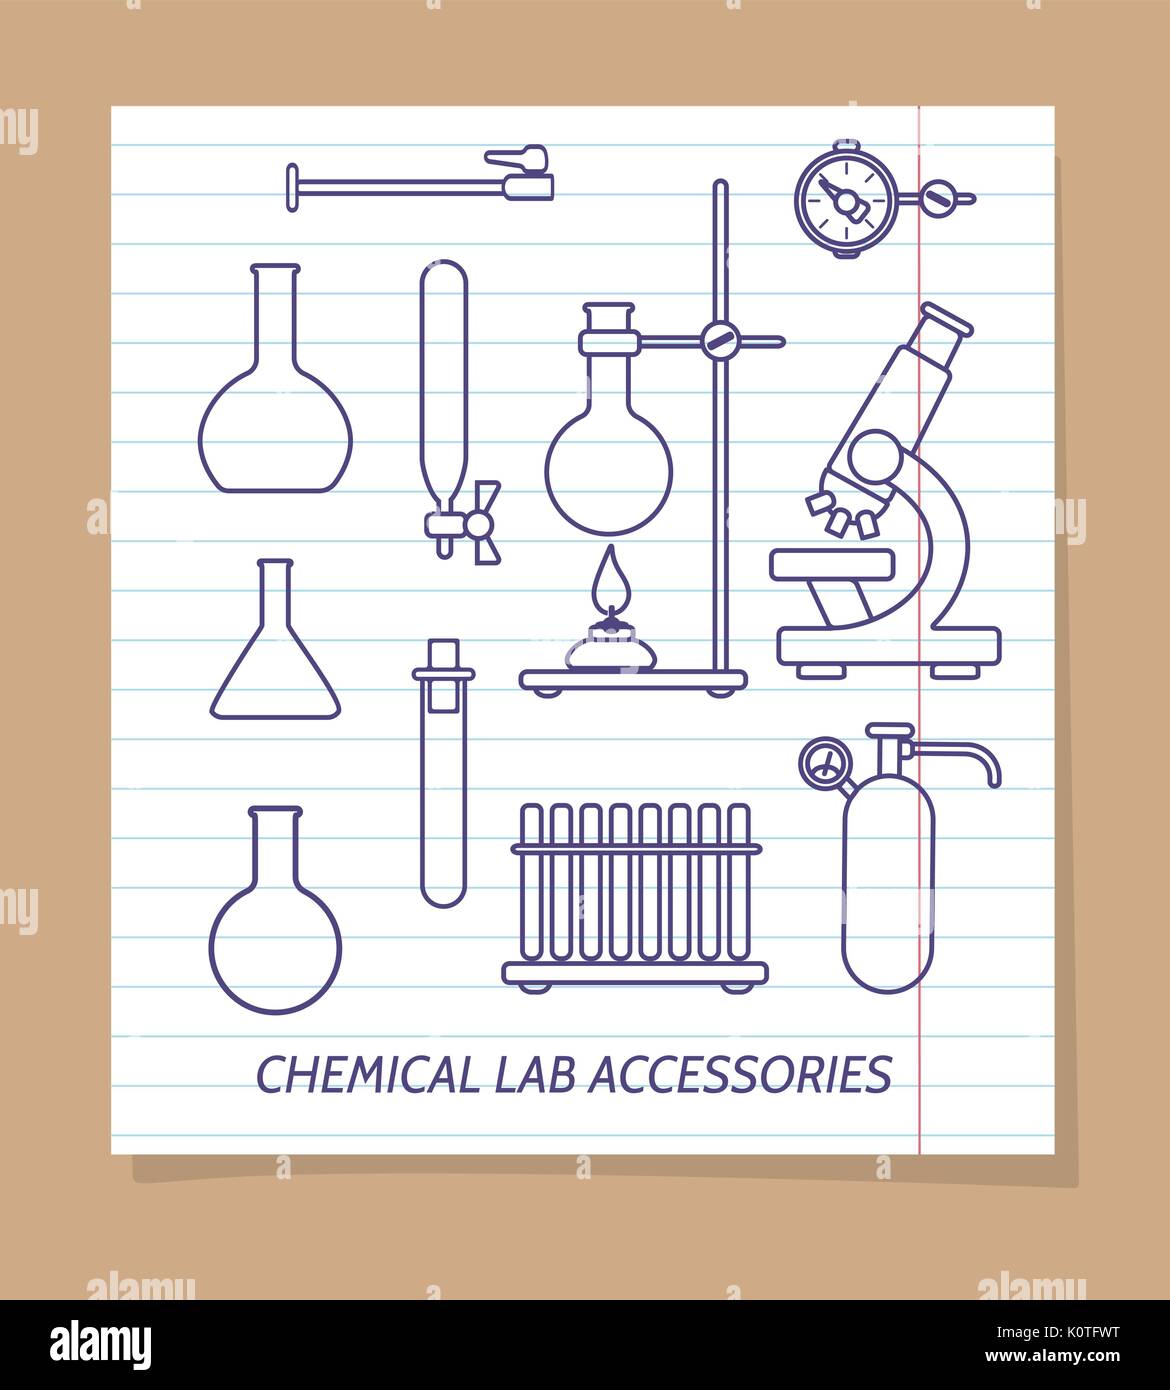 Chemisches Labor Zubehör Zeile für Symbole auf der Seite "Notizbuch",  Vector Illustration Stock-Vektorgrafik - Alamy